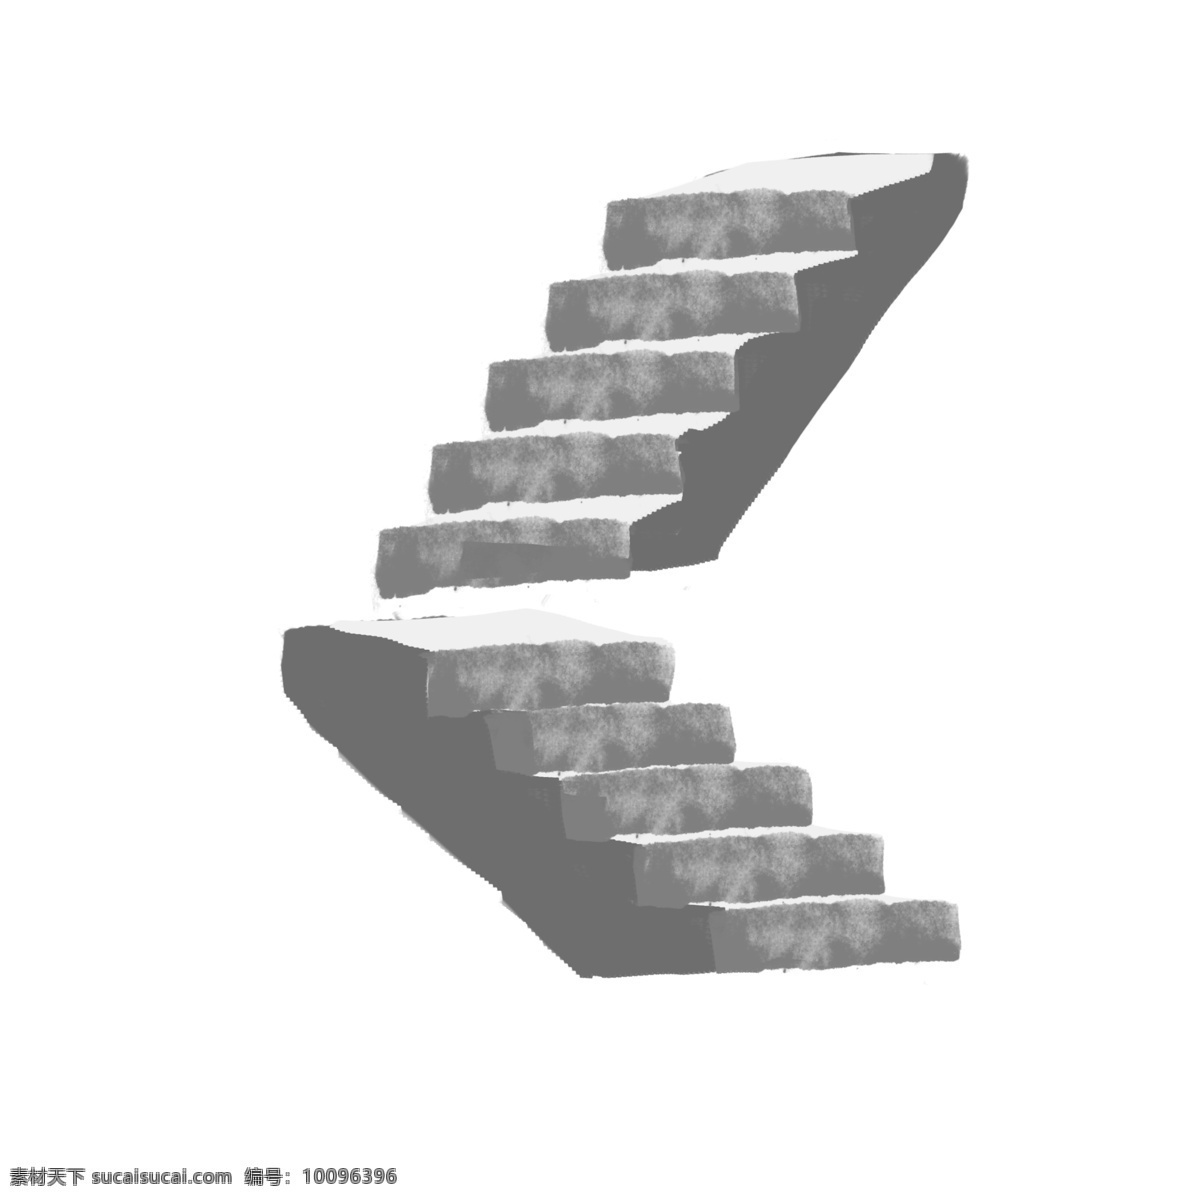 灰色 楼梯 装饰 插画 灰色的楼梯 楼梯装饰 楼梯插画 立体楼梯 精美楼梯 卡通楼梯 楼梯的插画